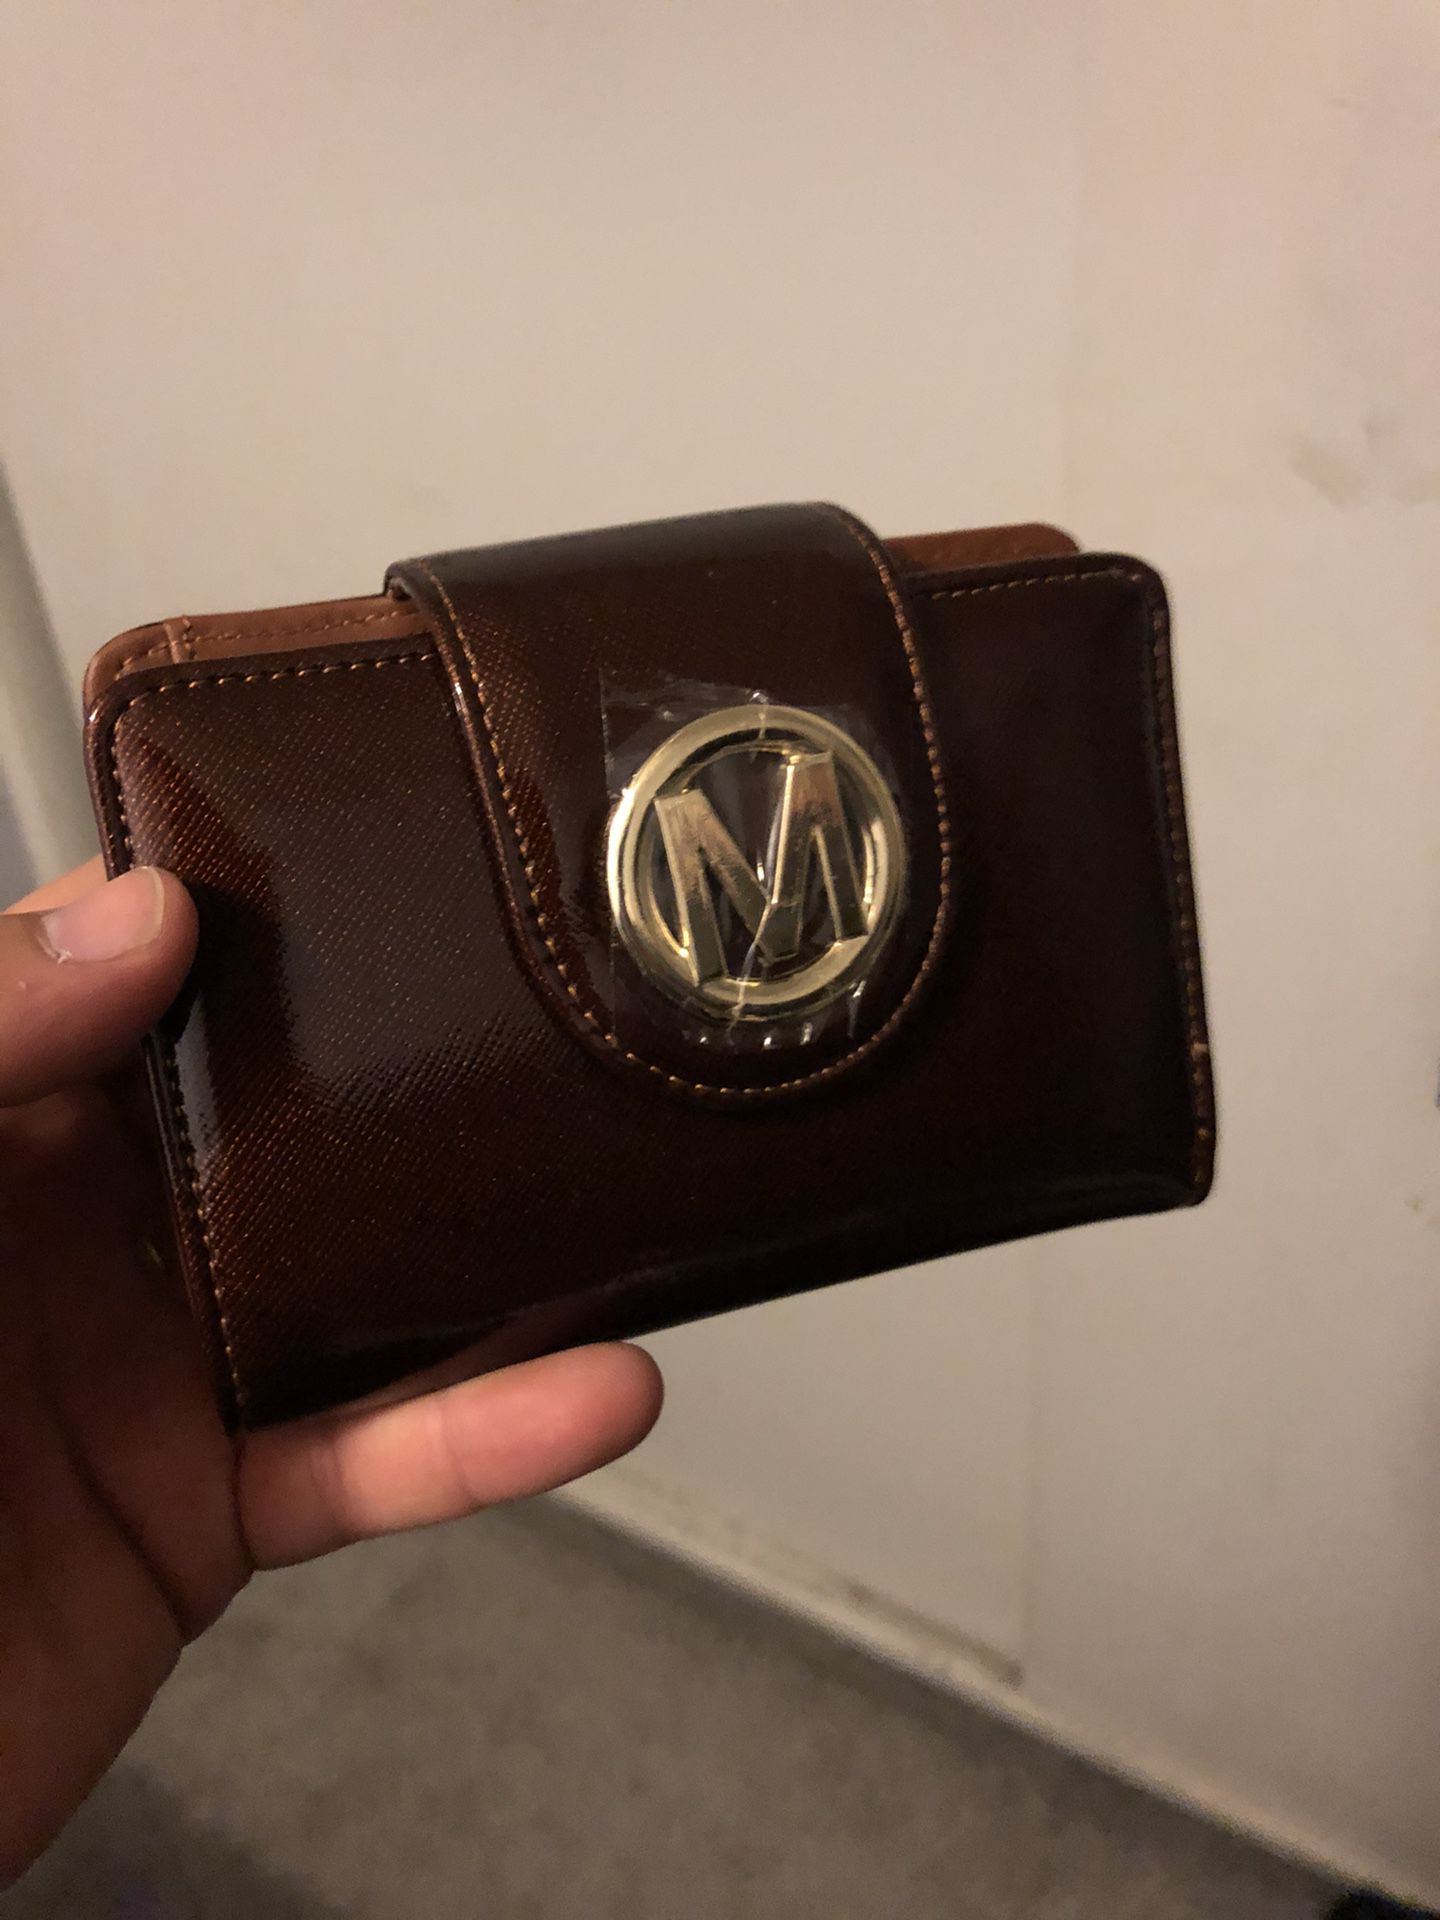 brand new womans small zipper wallet